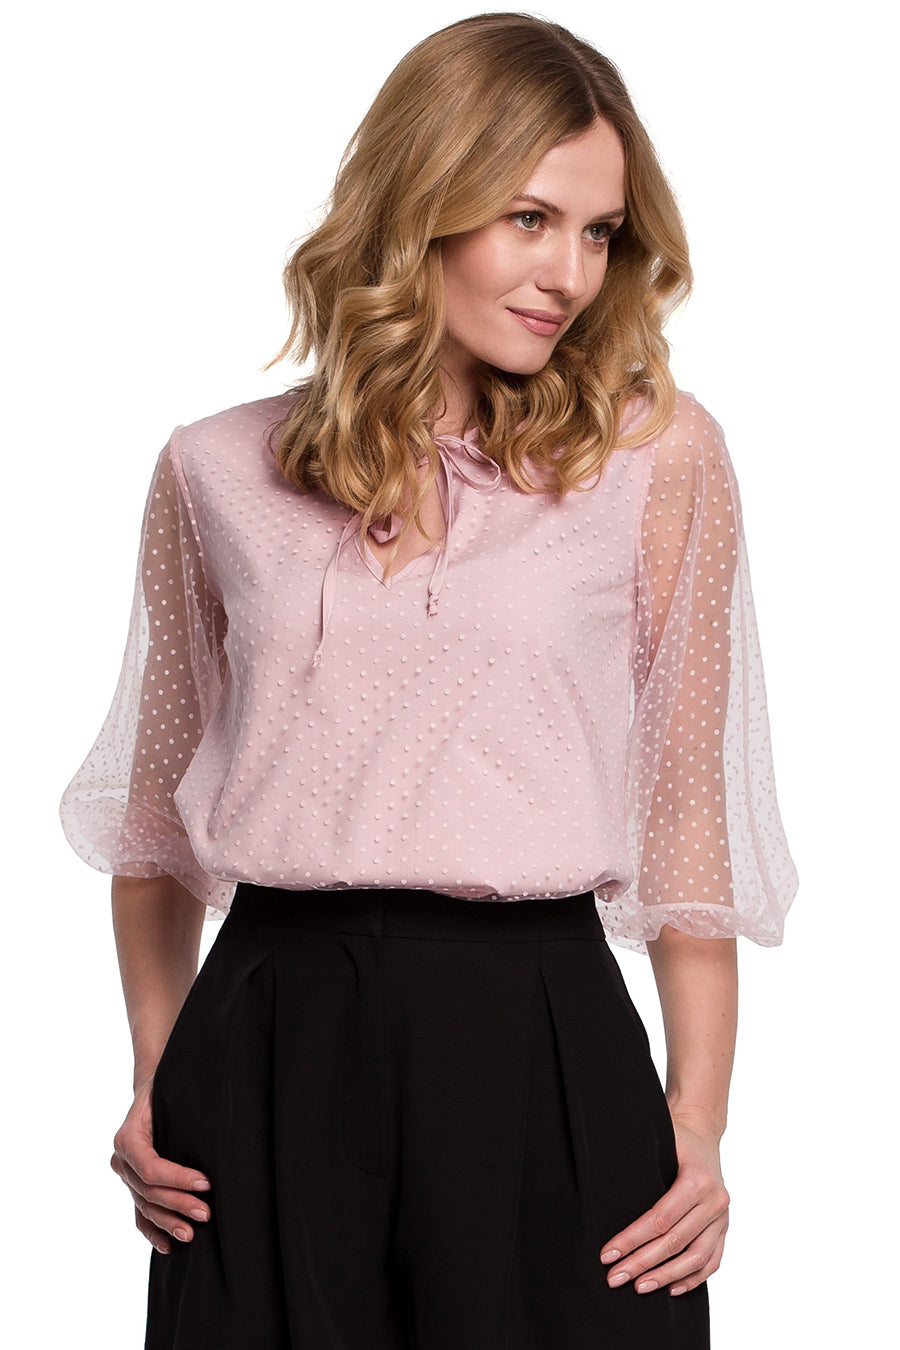 Γυναικεία μπλούζα Emeline, Ροζ 3